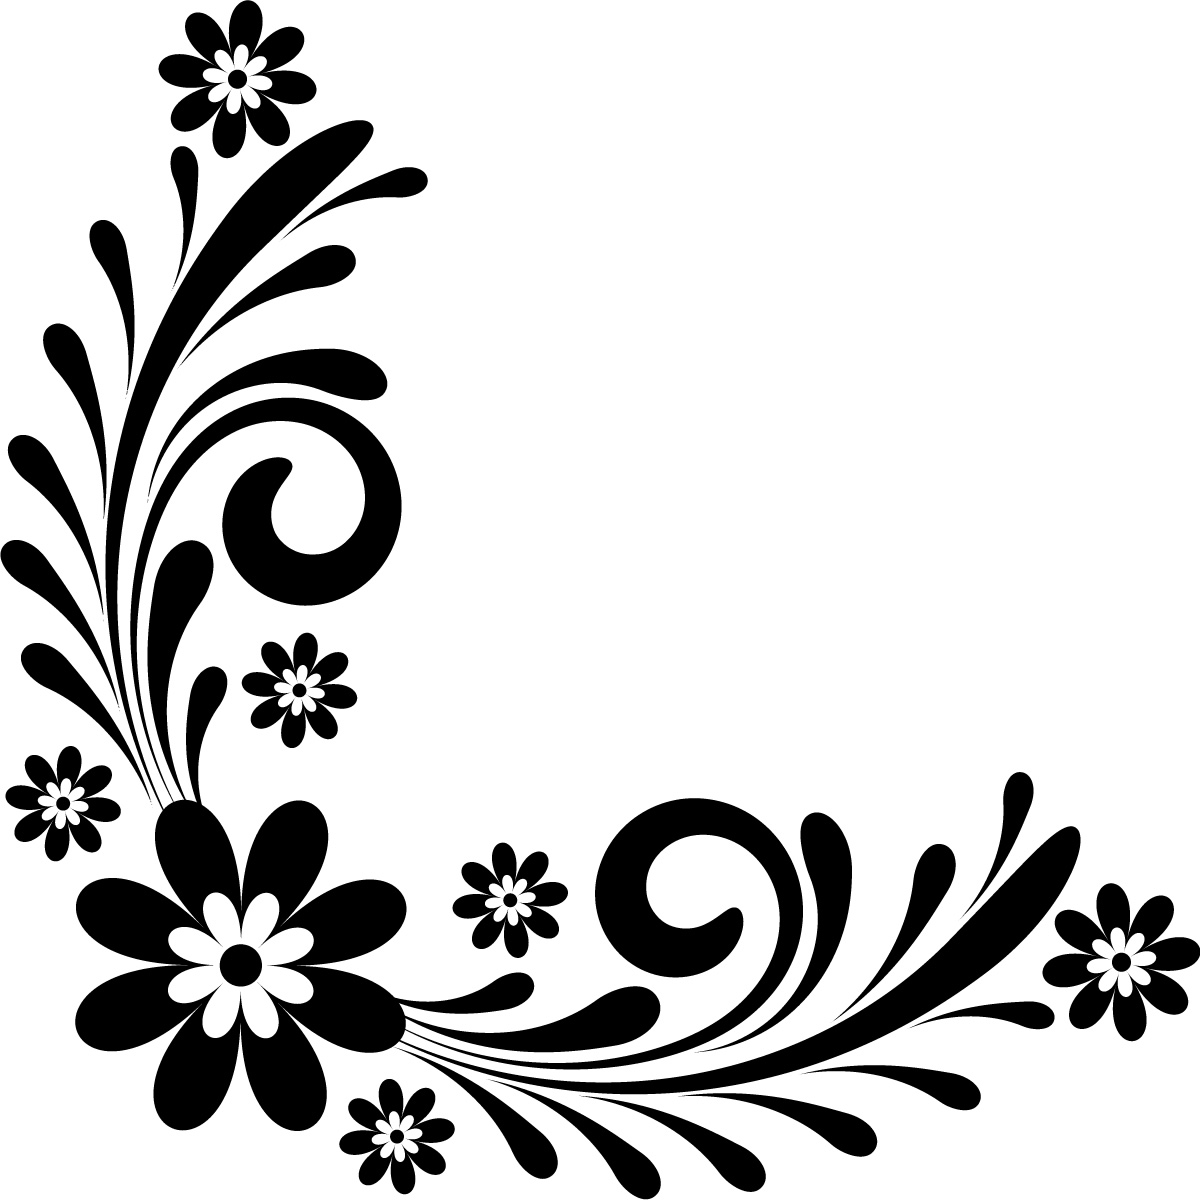  corner flower design black and white